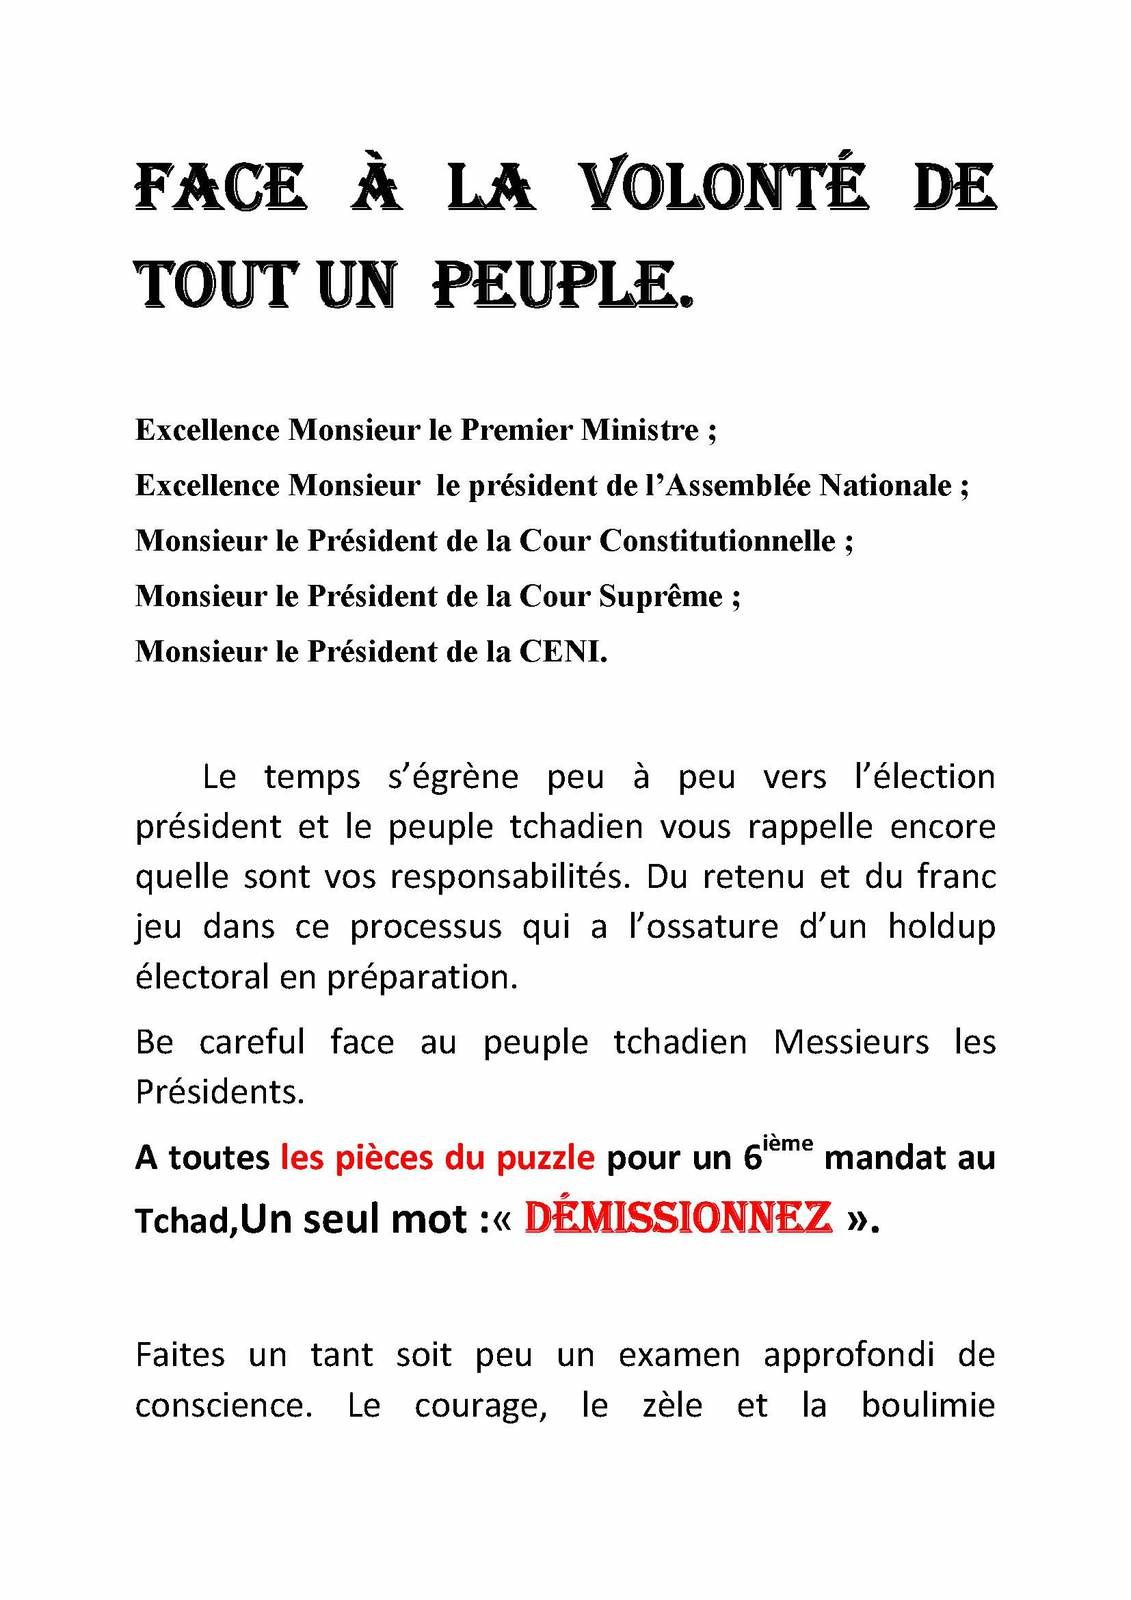 Appel à la démission au Tchad face à la volonté du peuple - Makaila, plume  combattante et indépendante